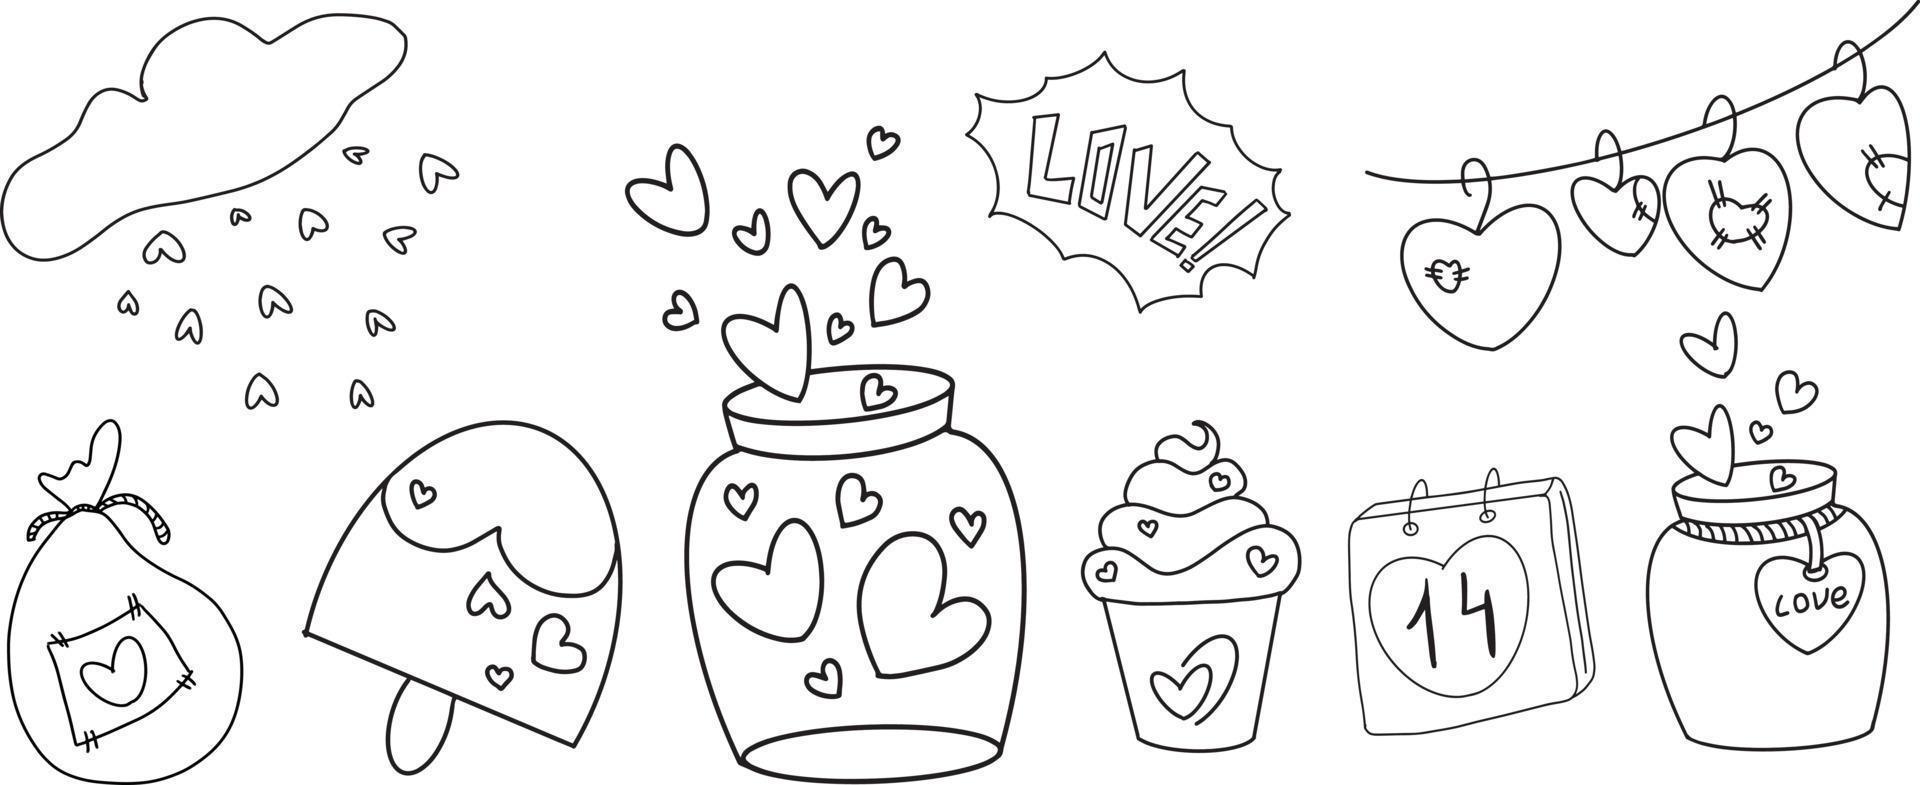 Vektor-Doodle Schwarz-Weiß-Herz, Liebe, Eis, Kuchen, Gefäß und Girlande mit Herzen vektor